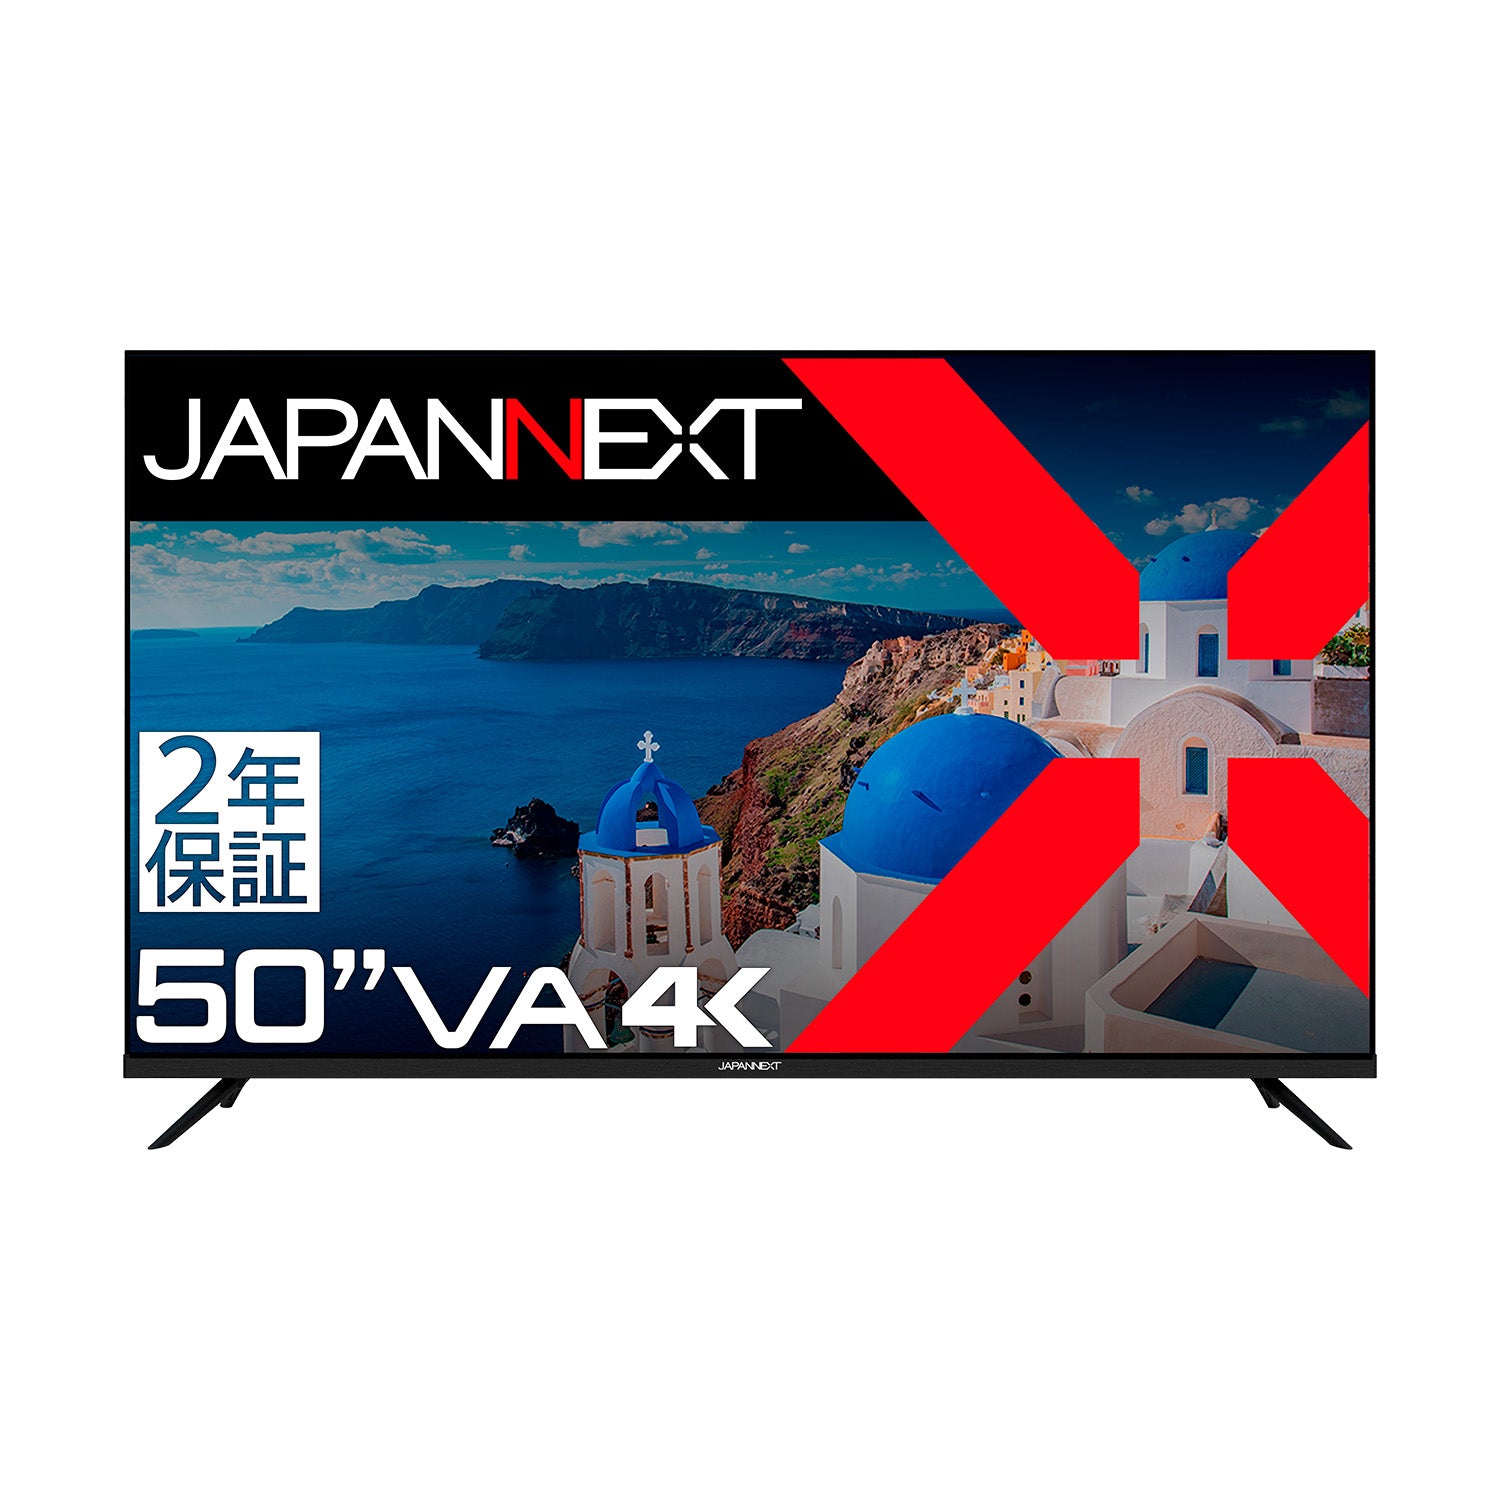 2年保証モデル】JAPANNEXT 50インチ VAパネル搭載 大型4K液晶モニター 